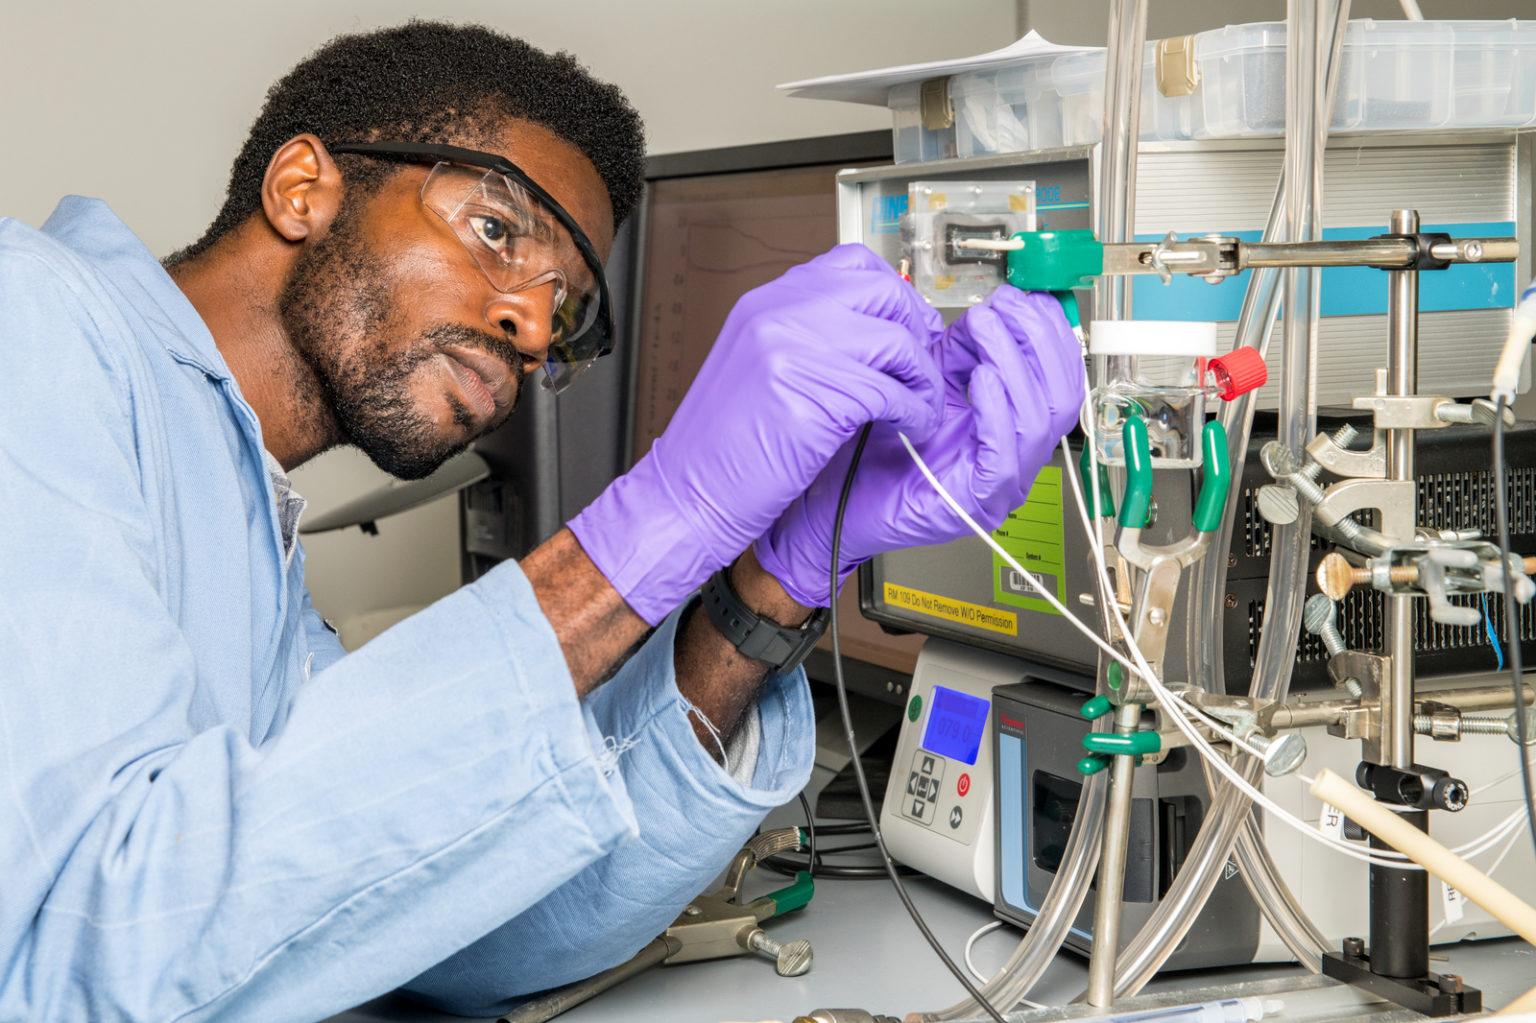 A scientist wearing gloves handles lab equipment.